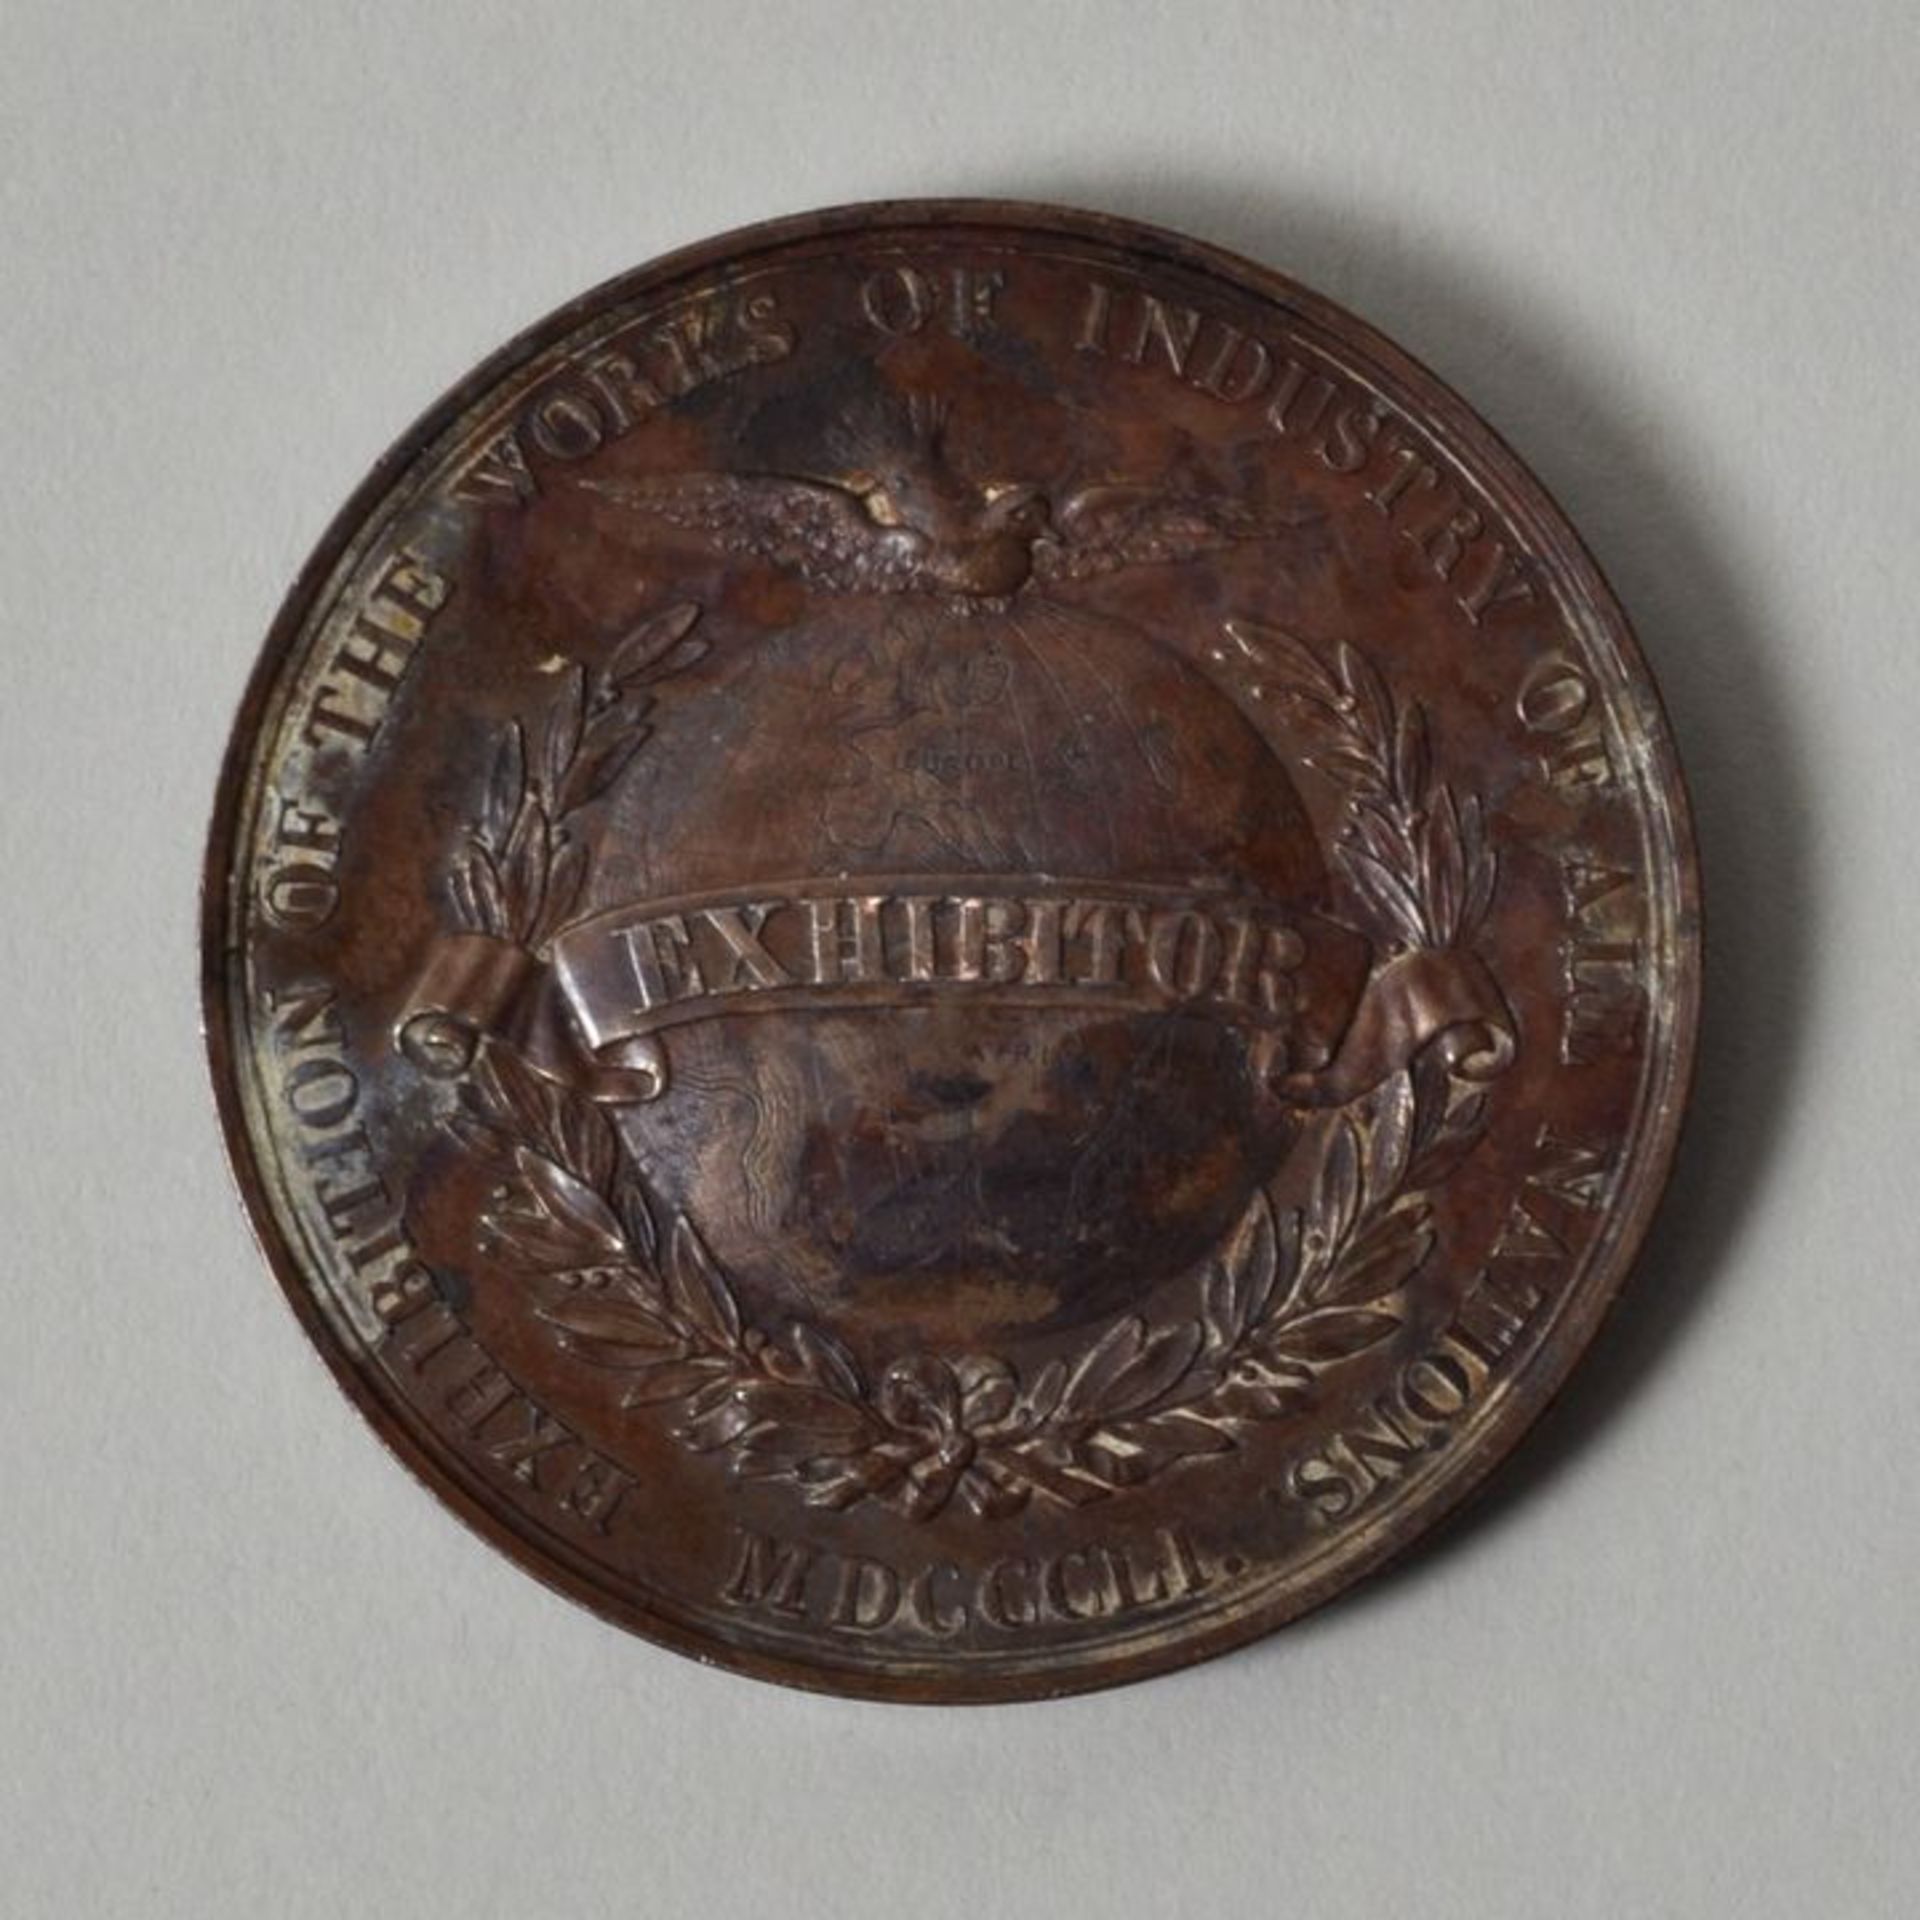 Medaille Weltausstellung 1851 in London in Bronze, 1851Modelleur William Wyon (1795-1851). Kupfer, - Bild 2 aus 2